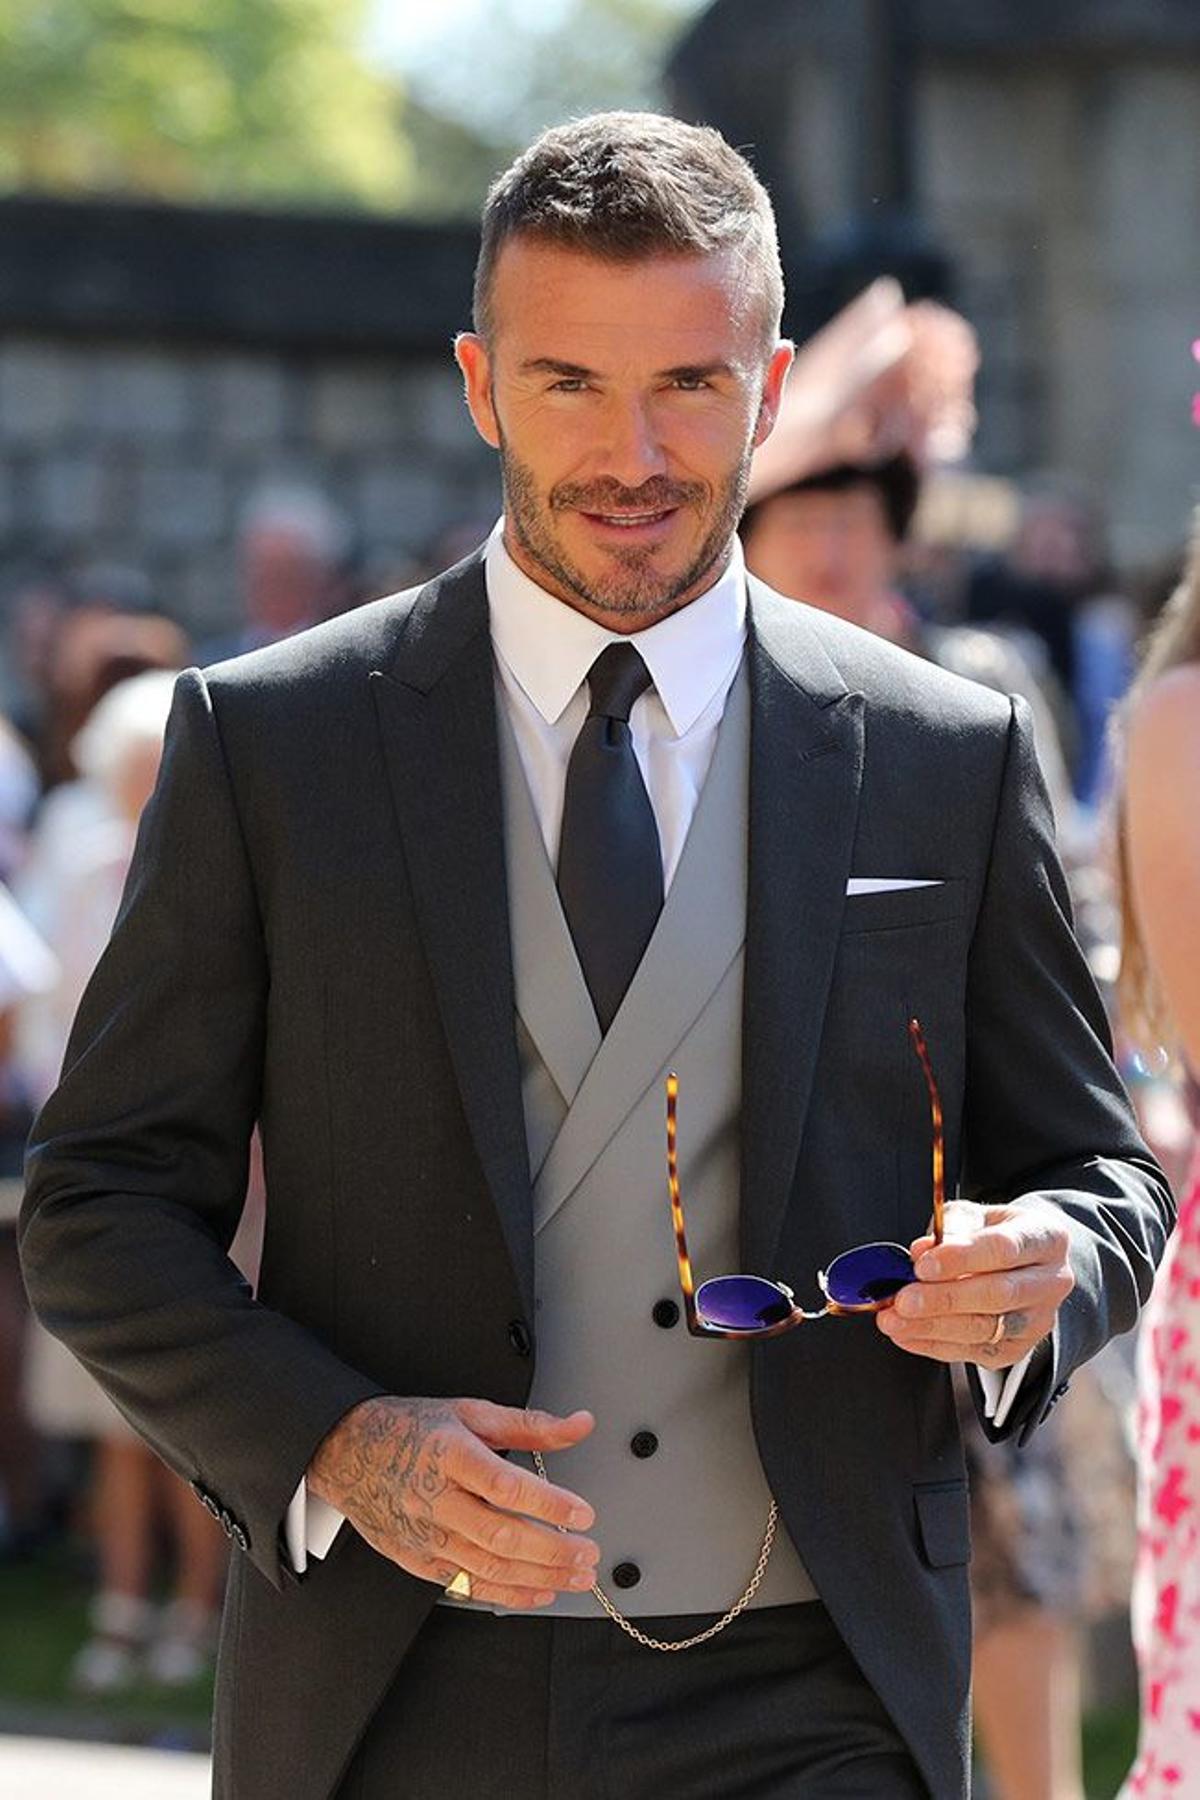 El exfutbolista David Beckham entrando a la boda del Príncipe Harry y Meghan Markle